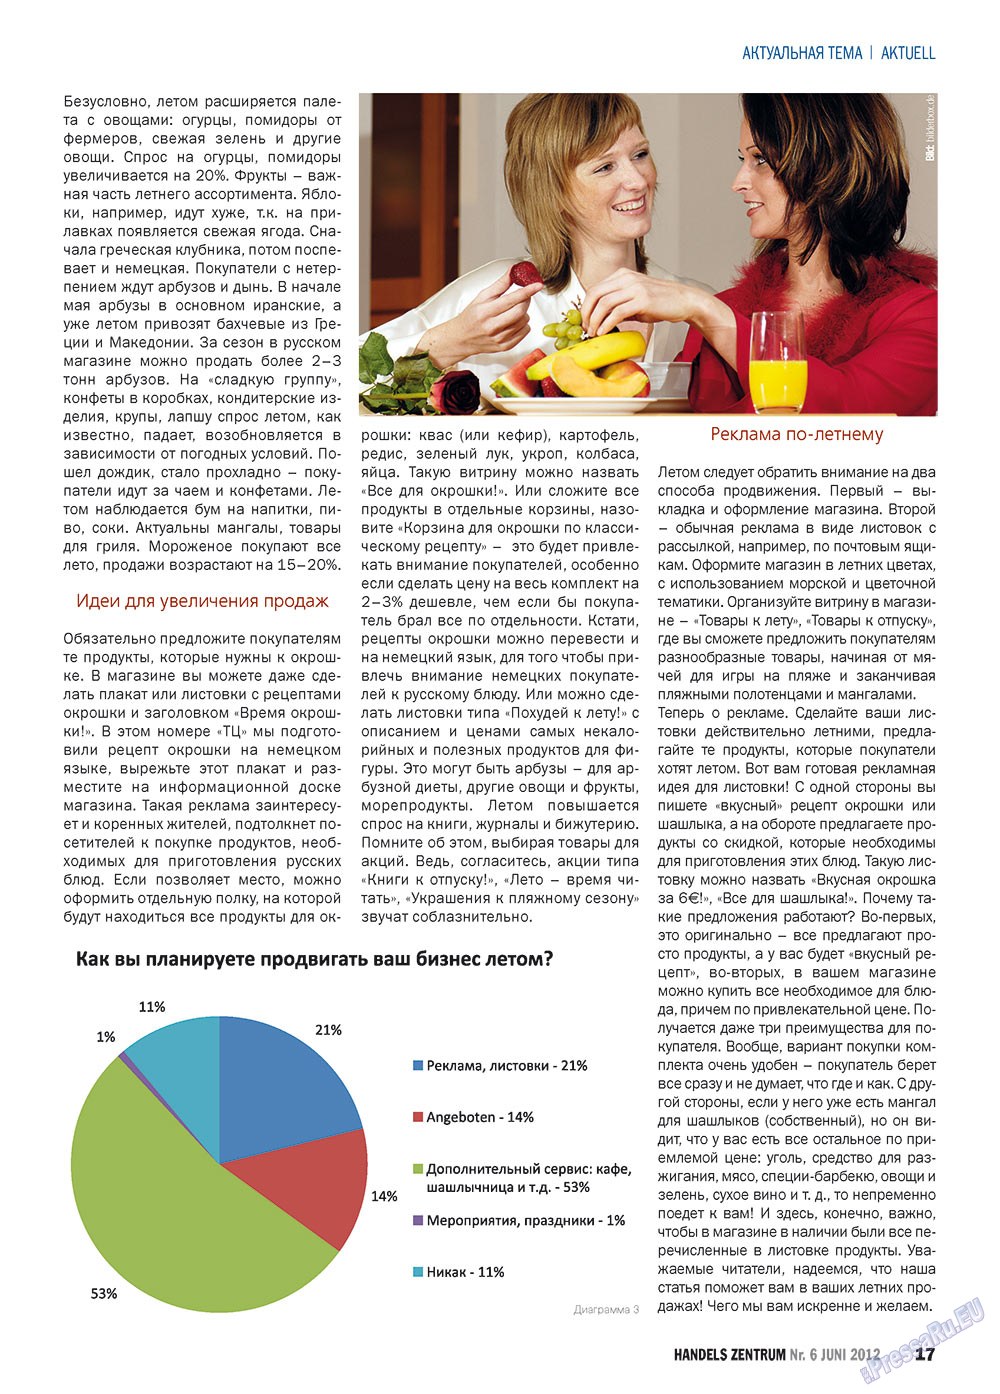 Handels Zentrum (Zeitschrift). 2012 Jahr, Ausgabe 6, Seite 17